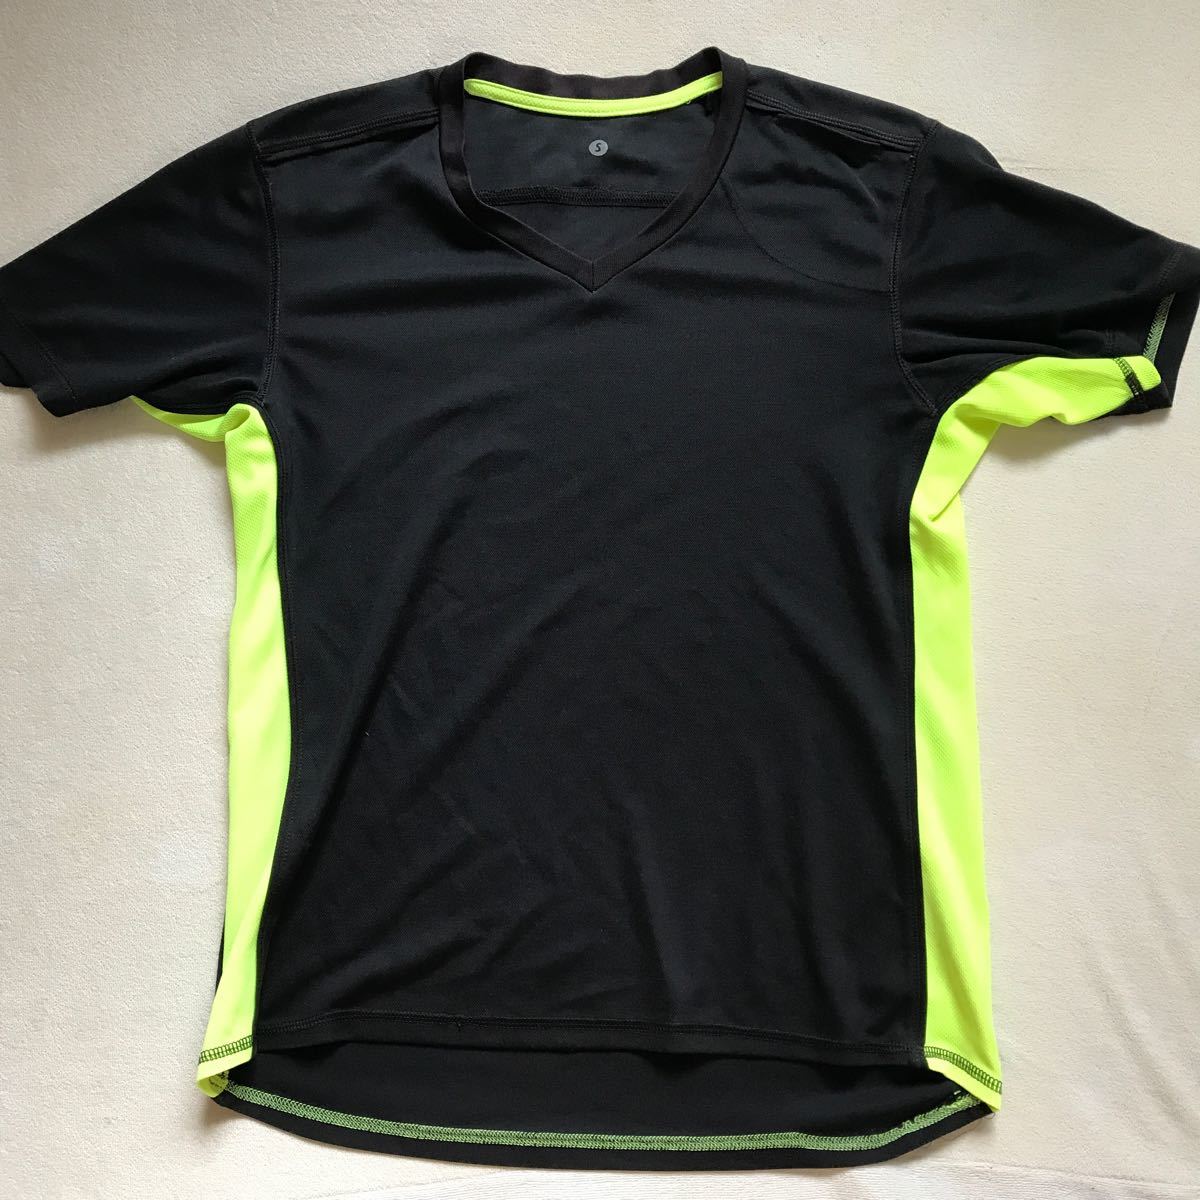 スポーツ用半袖Tシャツ 3枚 部活動ウェア トレーニングウェア ランニングウェア